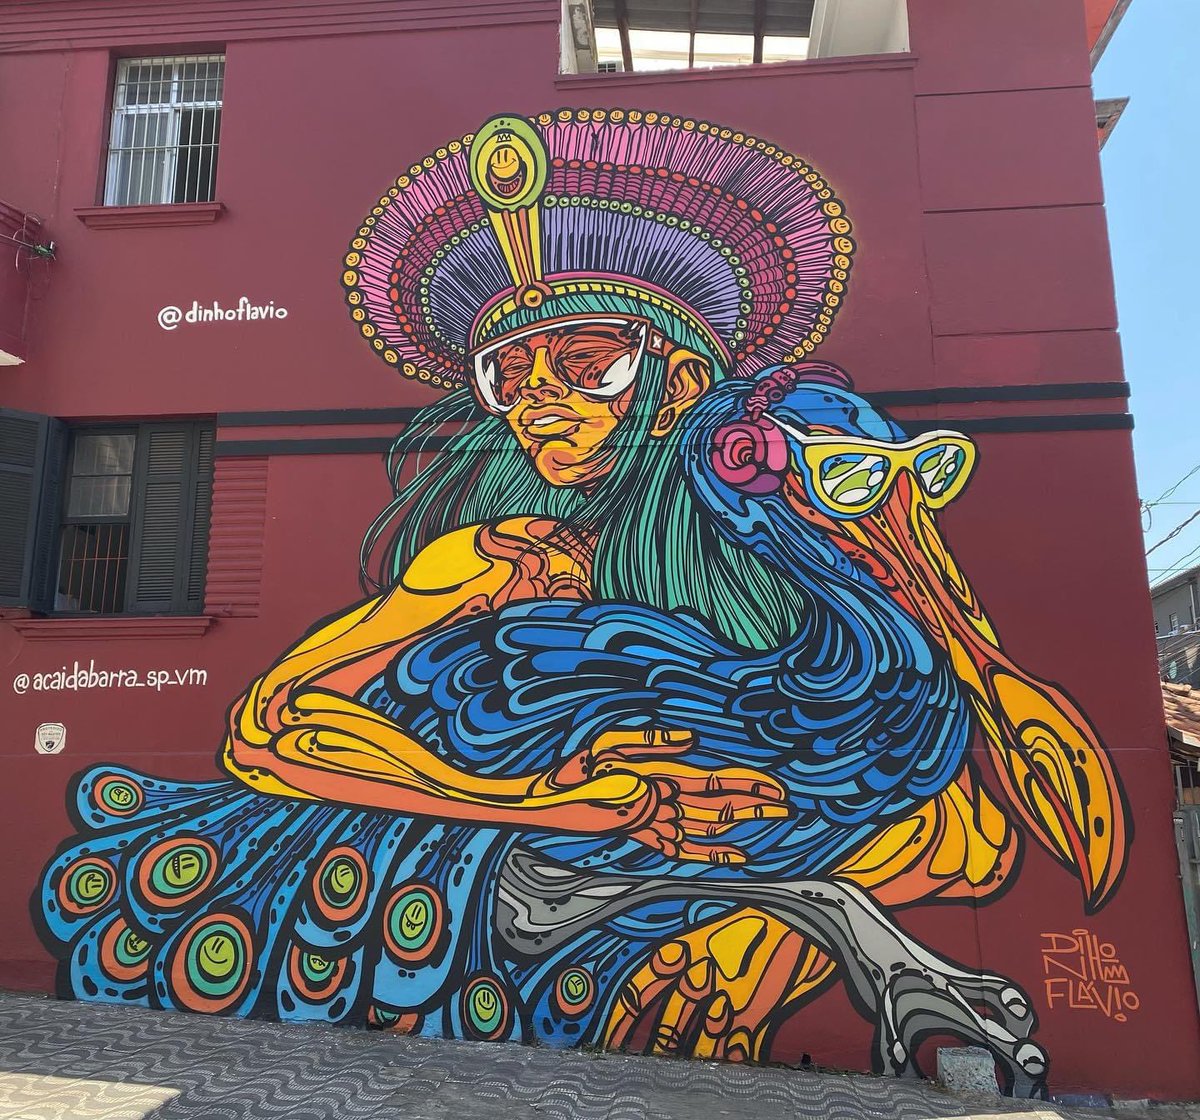 📍Vila Mariana
🎨 Arte @dinhoflavio @acaidabarra_sp_vm 
@paredespichadas #arteurbana #tv_streetart #be_one_urbanart #total_urbanart #sampagraffiti #streetartchat @urbanart_wd #graffiti_of_our_world #graffitiart #loves_united_graffiti #urbanartchannel #streetart